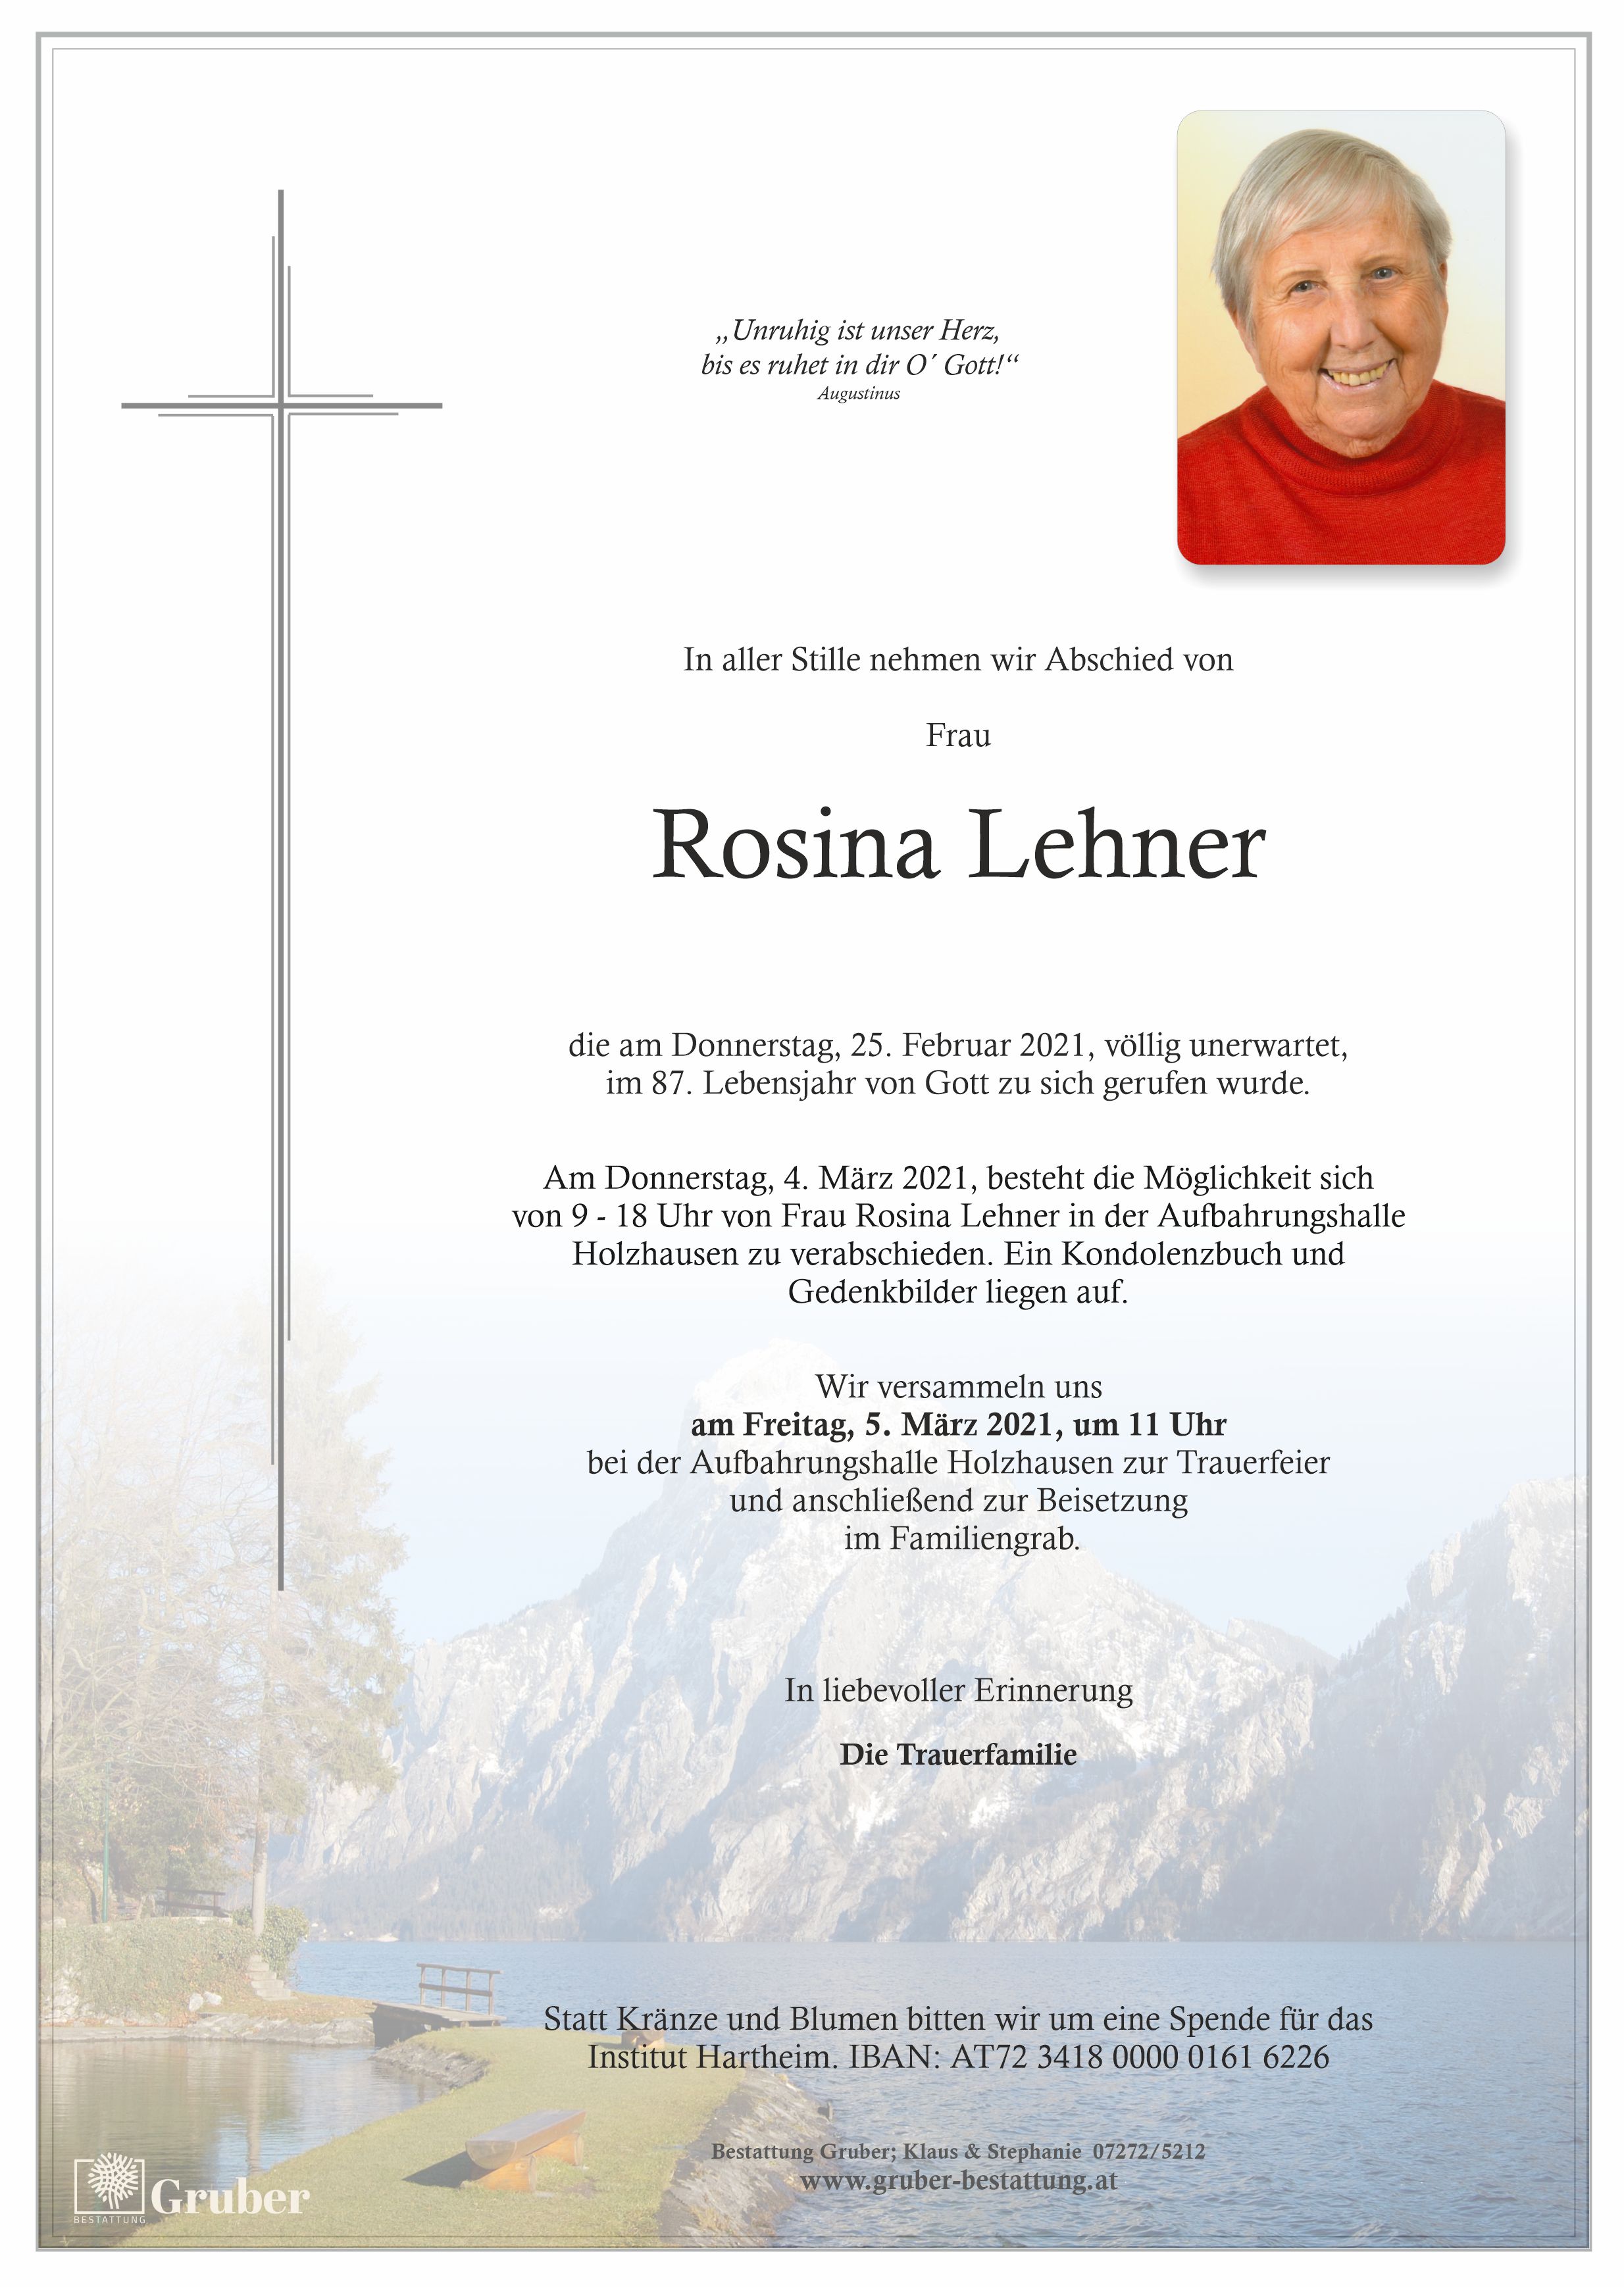 Rosina Lehner (Gmunden)